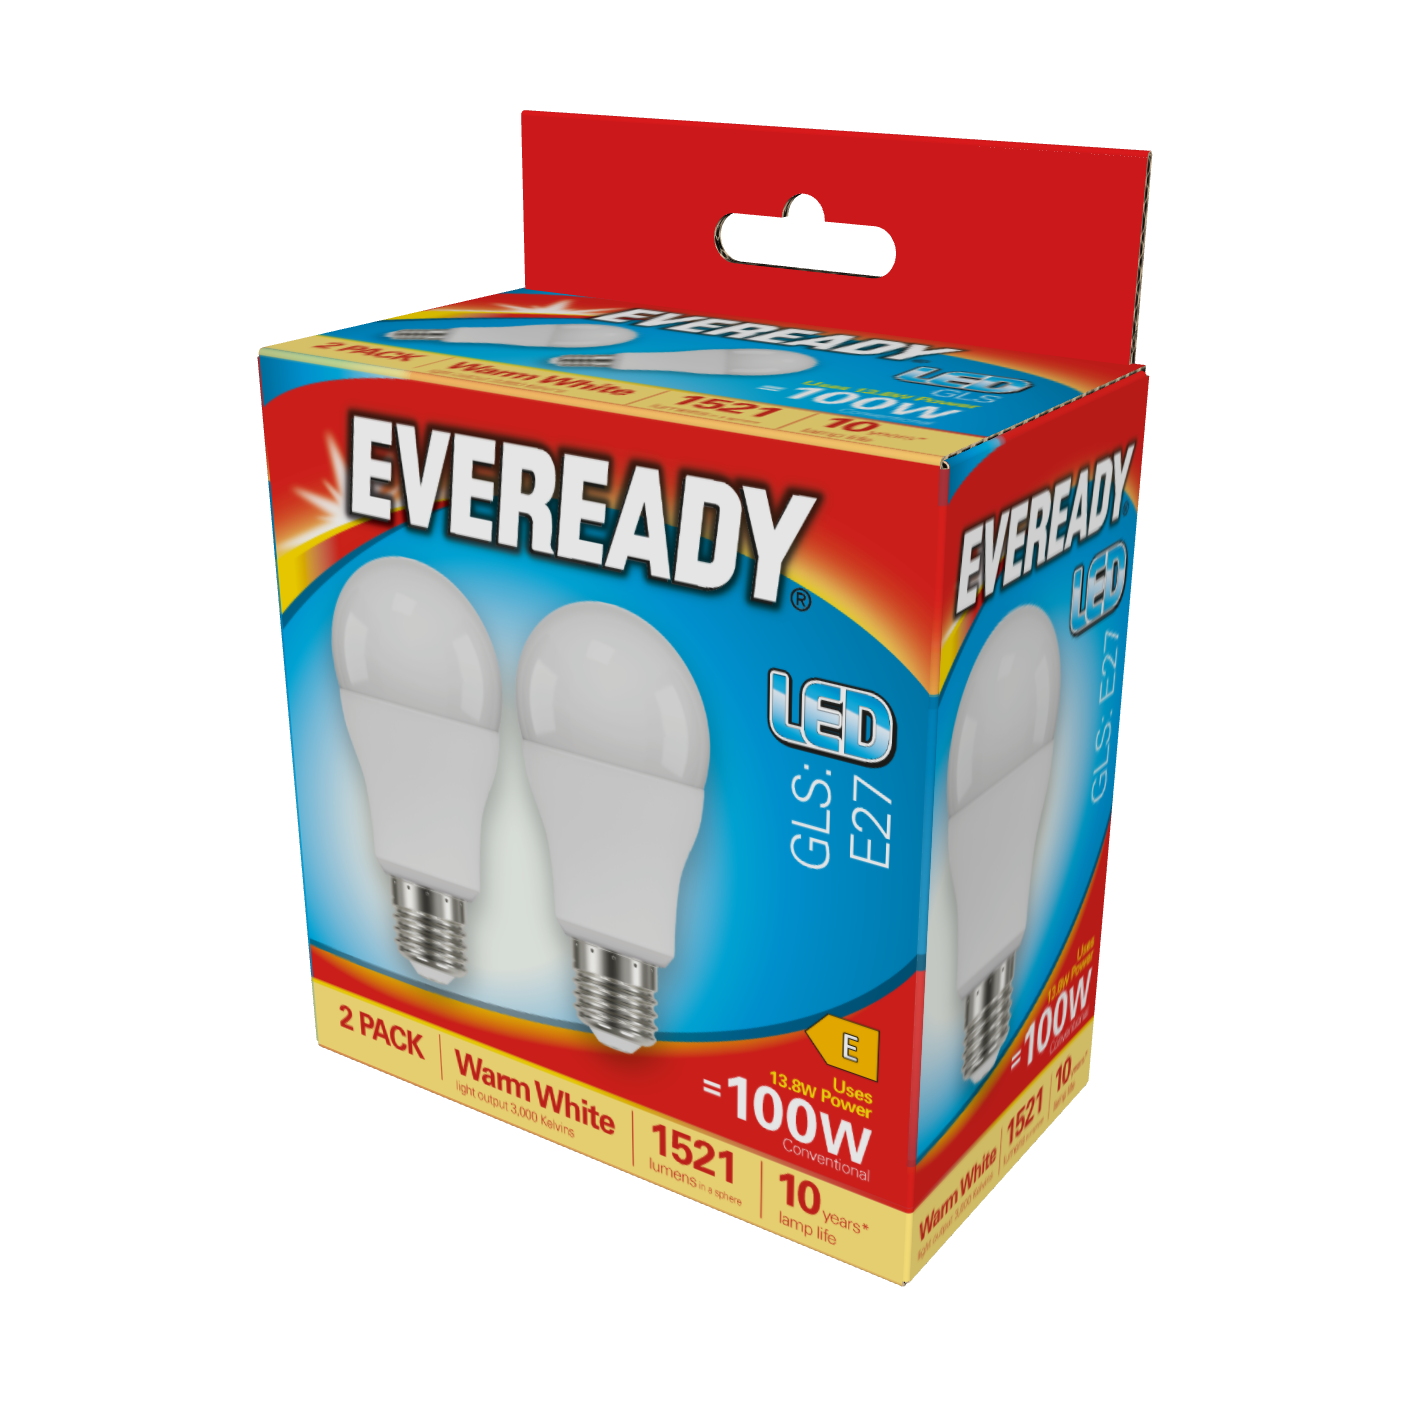 Eveready LED GLS E27 (ES) 1.521 lm 13,8 W 3.000 K (Warmweiß), 2er-Box